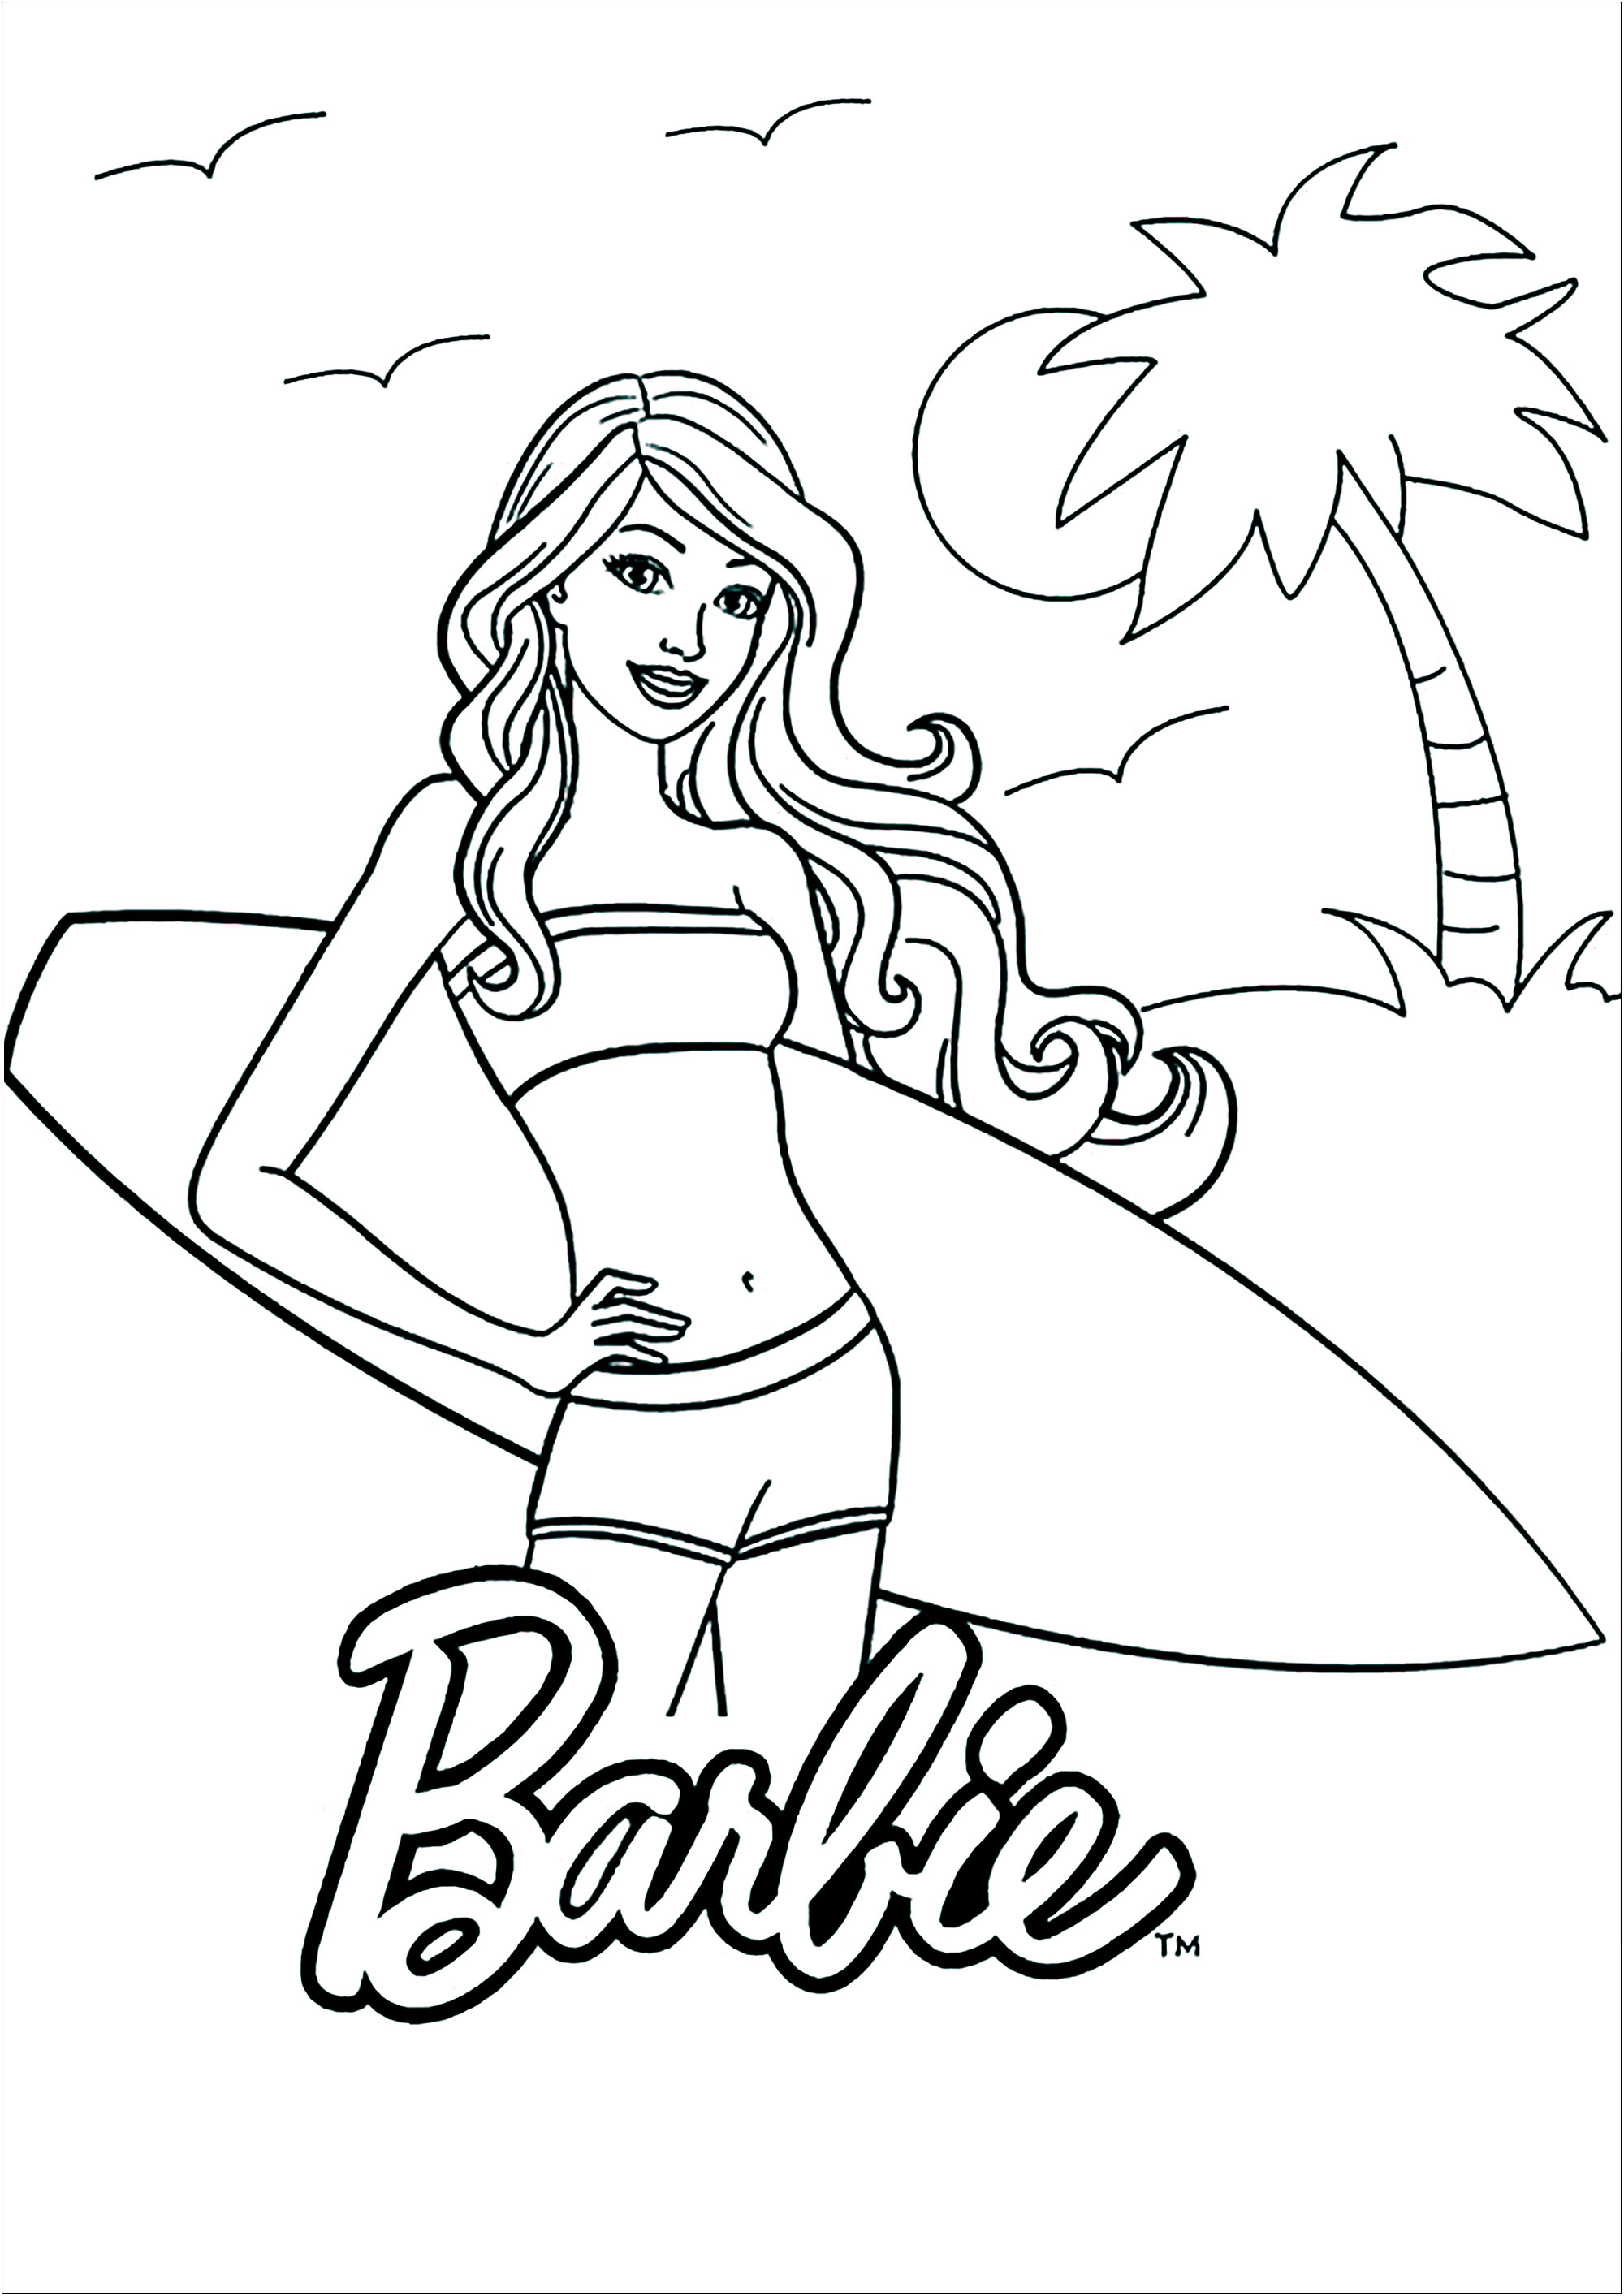 Раскраска барби формат а4. Раскраски для девочек Барби. Раскраска Барби на пляже.